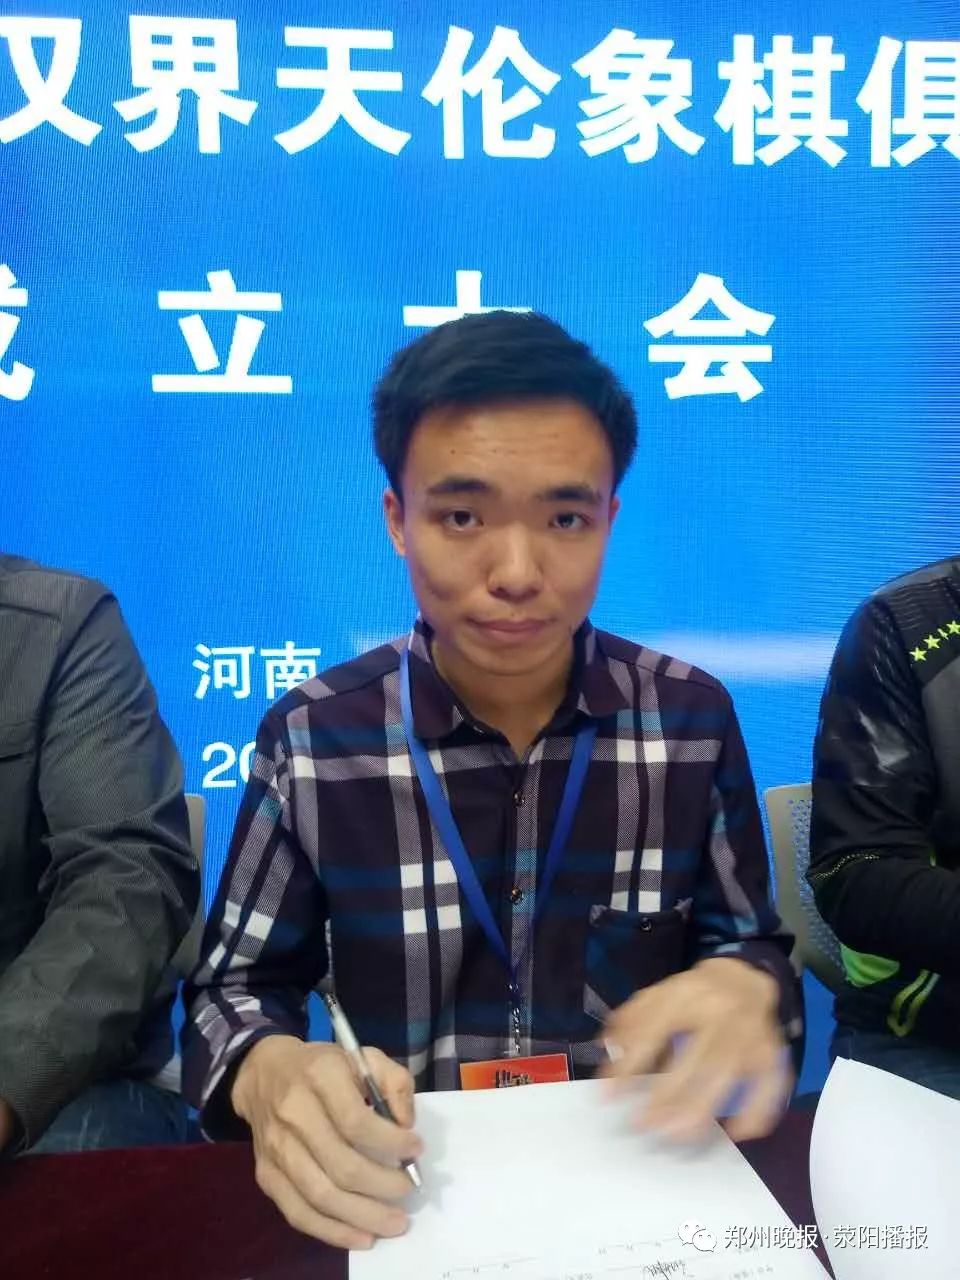 曹岩磊,国际特级象棋大师,河南三门峡人.